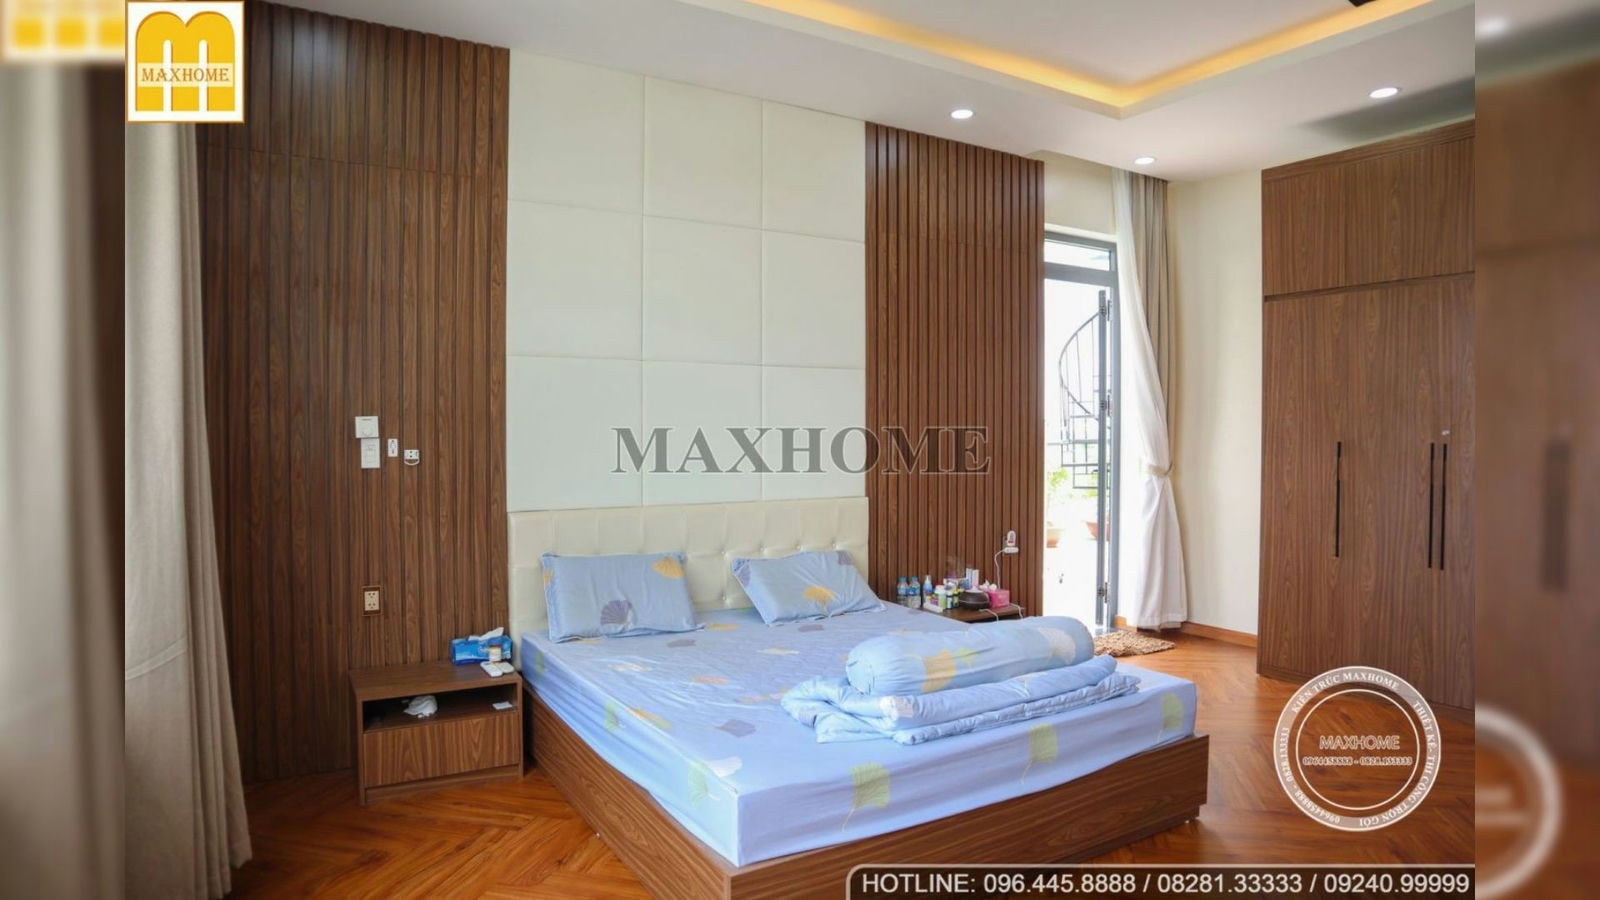 Tham quan nội thất bên trong biệt thự 15 tỷ tại Tiền Giang | Maxhome